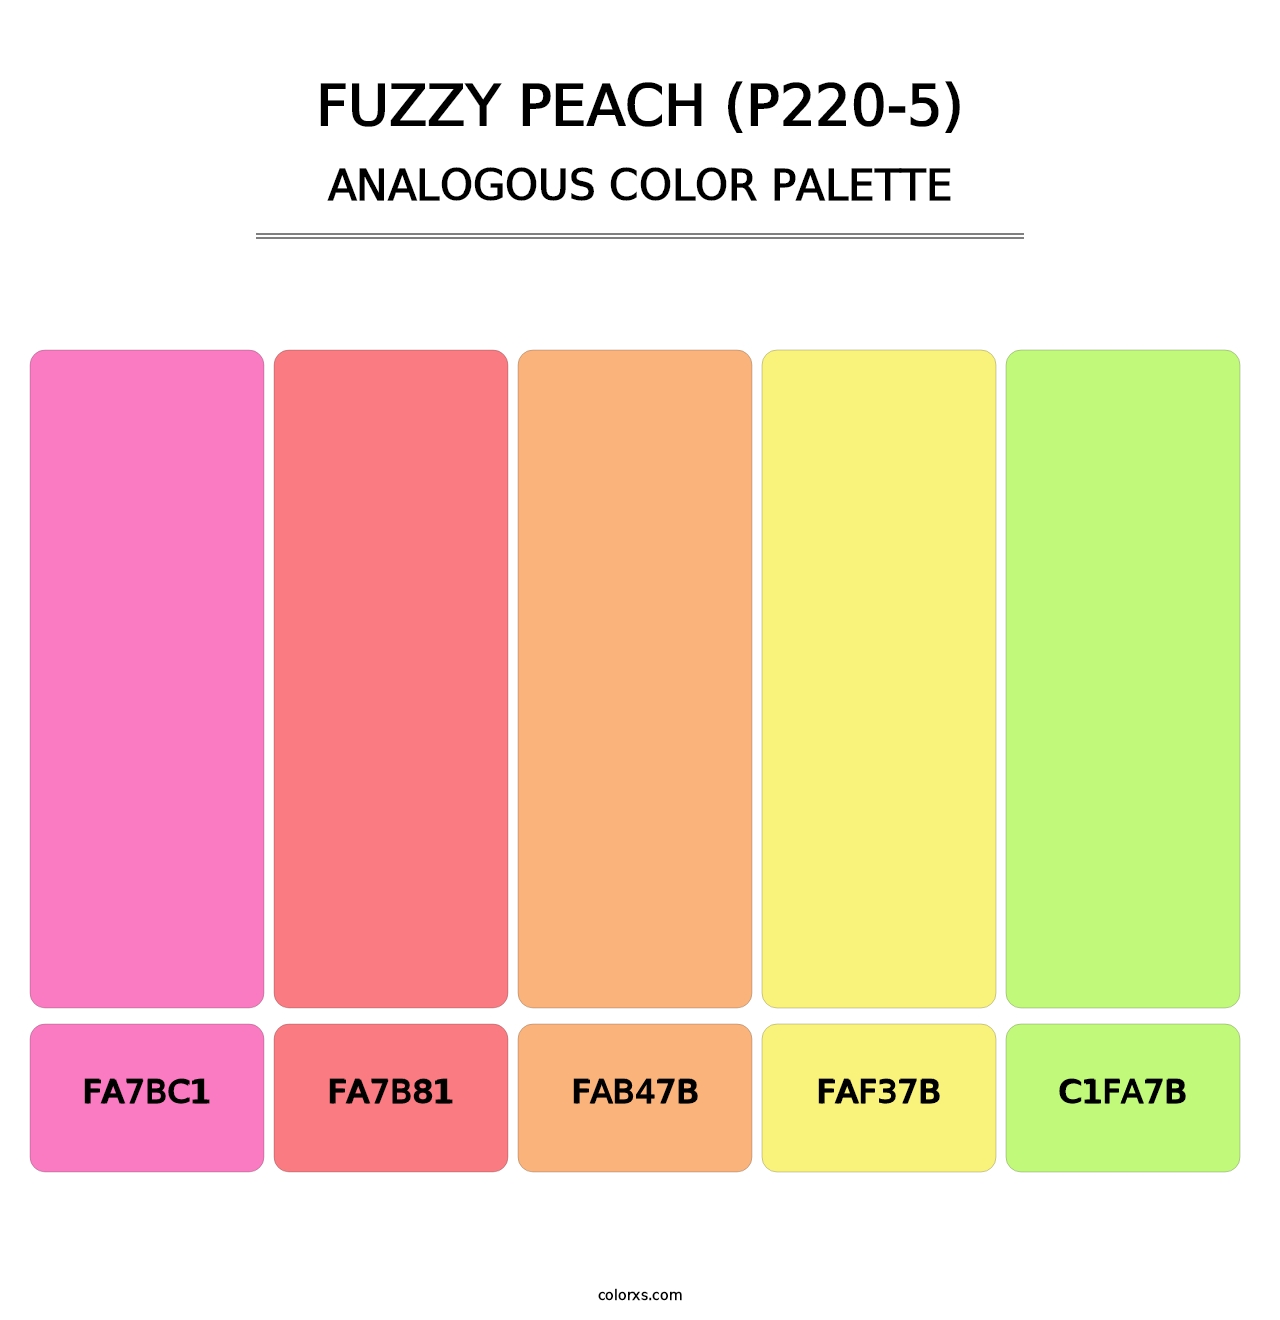 Fuzzy Peach (P220-5) - Analogous Color Palette